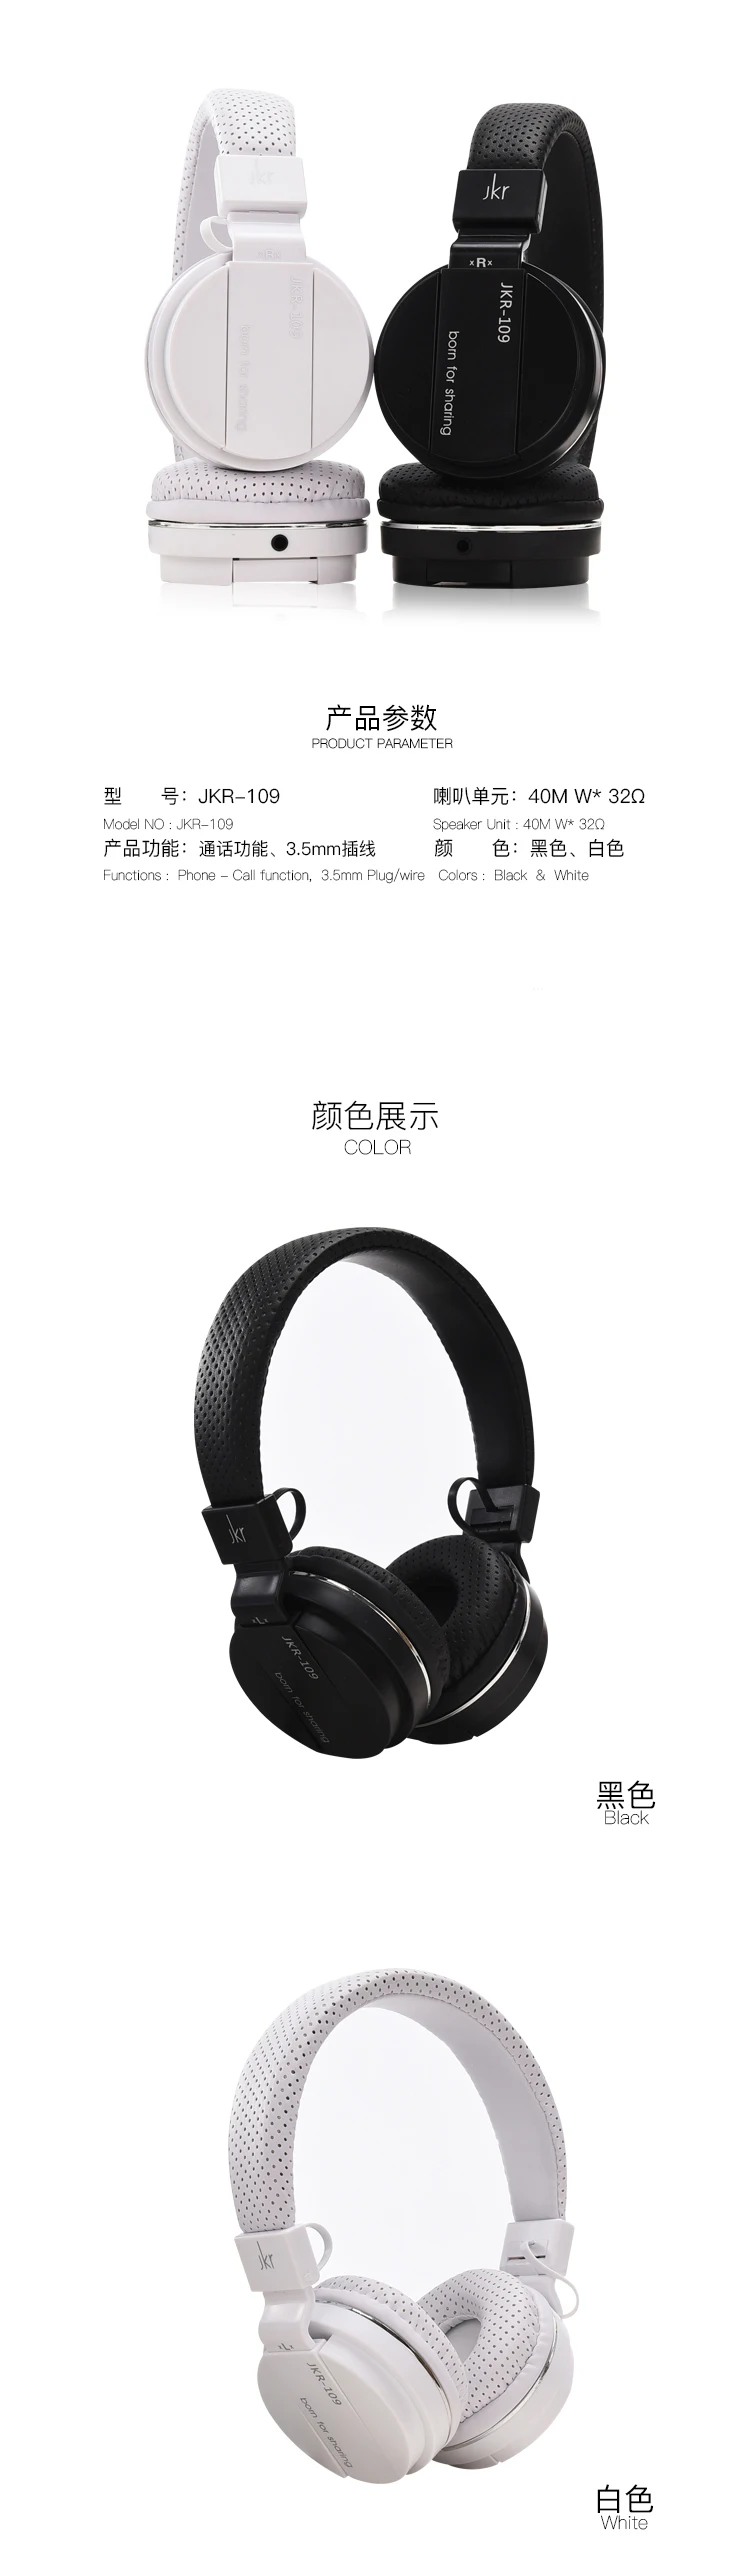 JKR 109 наушники Спортивная Музыкальная гарнитура Hands-free для iPhone xiaomi Android затычки в уши для микрофона для мобильного телефона